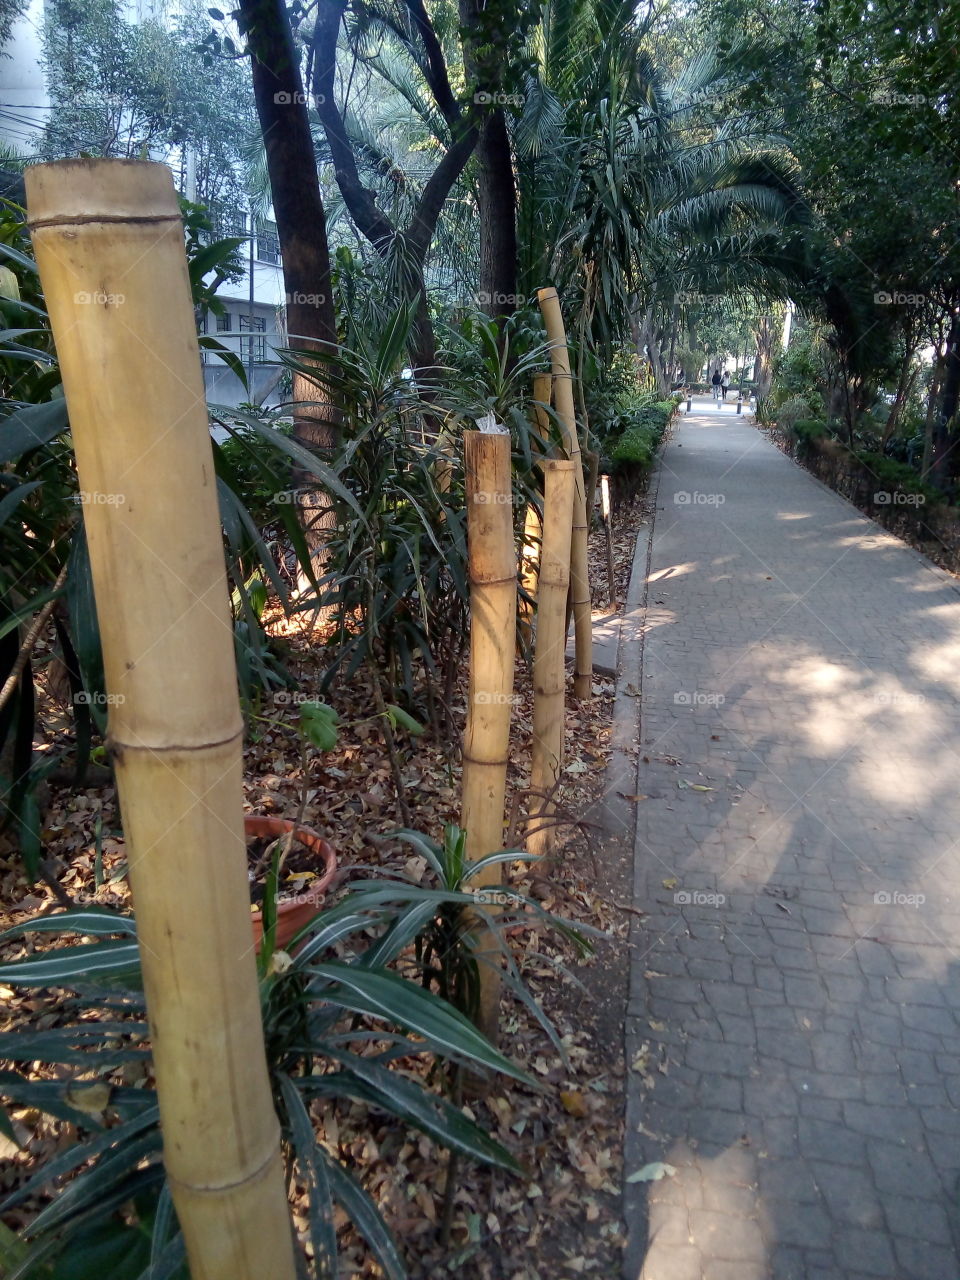 camino para recreación dentro de la ciudad con piso de piedra y árboles y plantas aún lado.